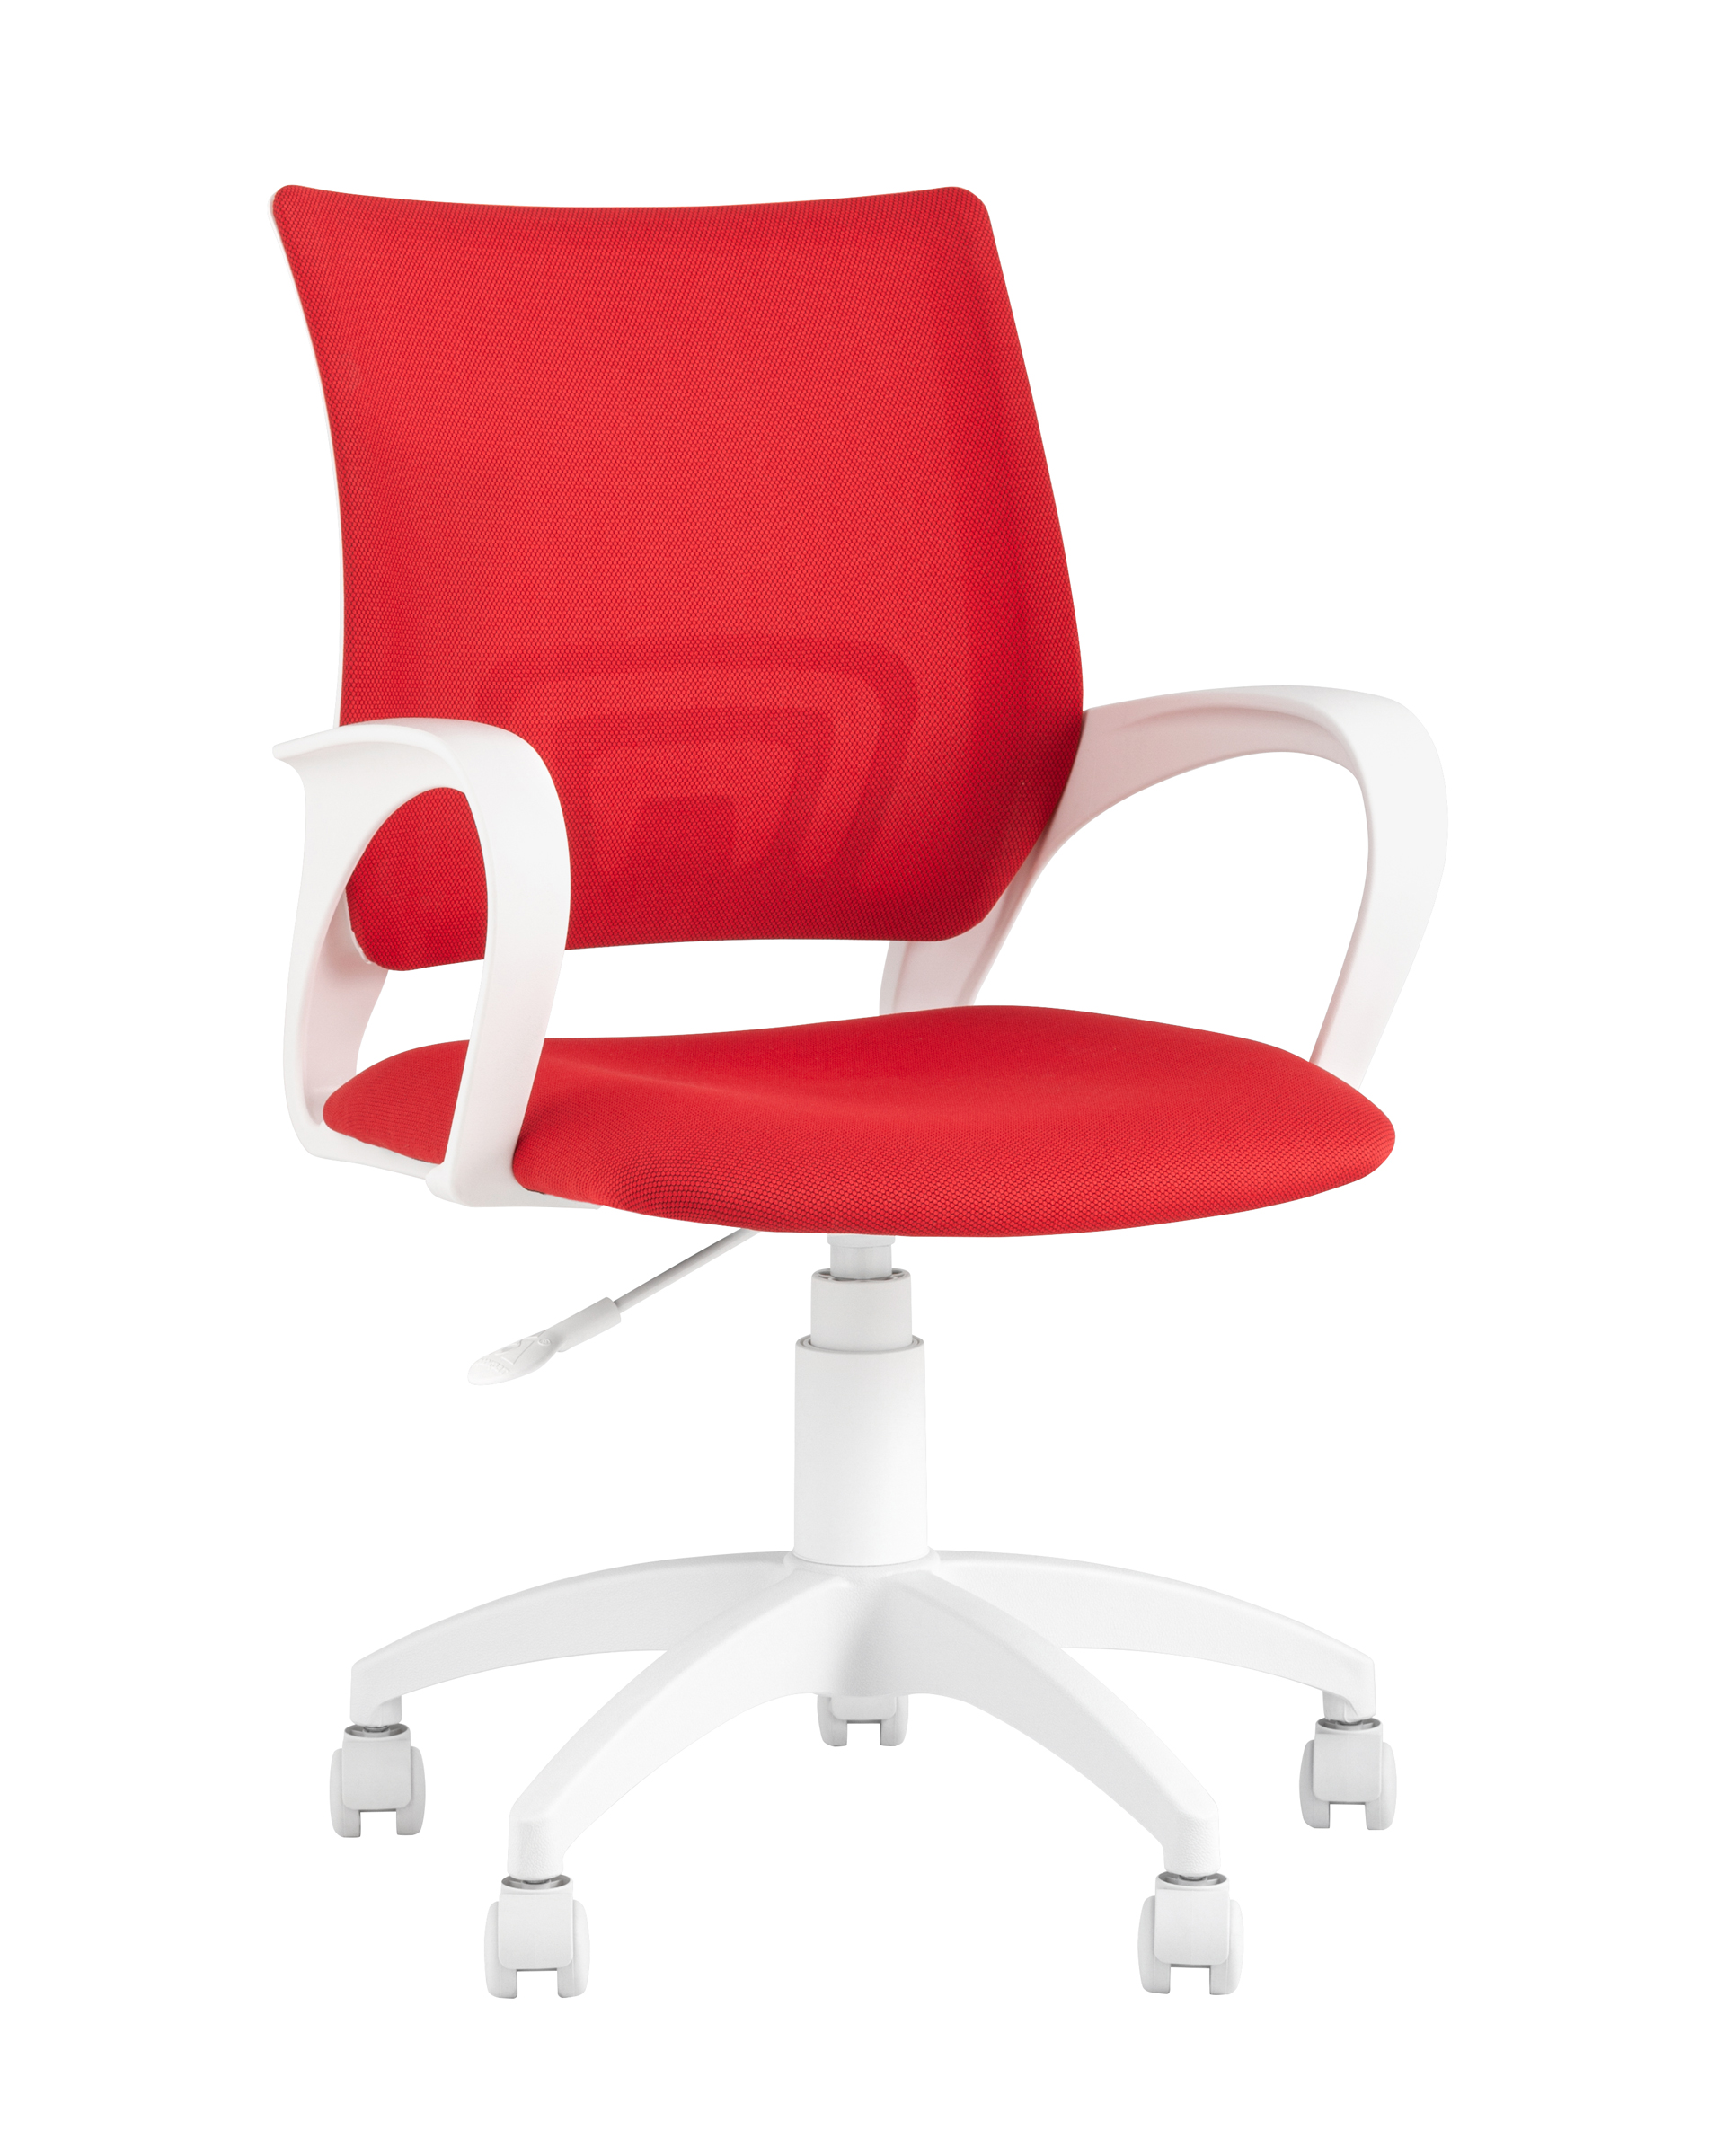 Рабочие кресла  The Furnish Кресло офисное topchairs st-basic-w спинка белая сетка сиденье красная ткань крестовина белый пластик (stoolgroup) белый